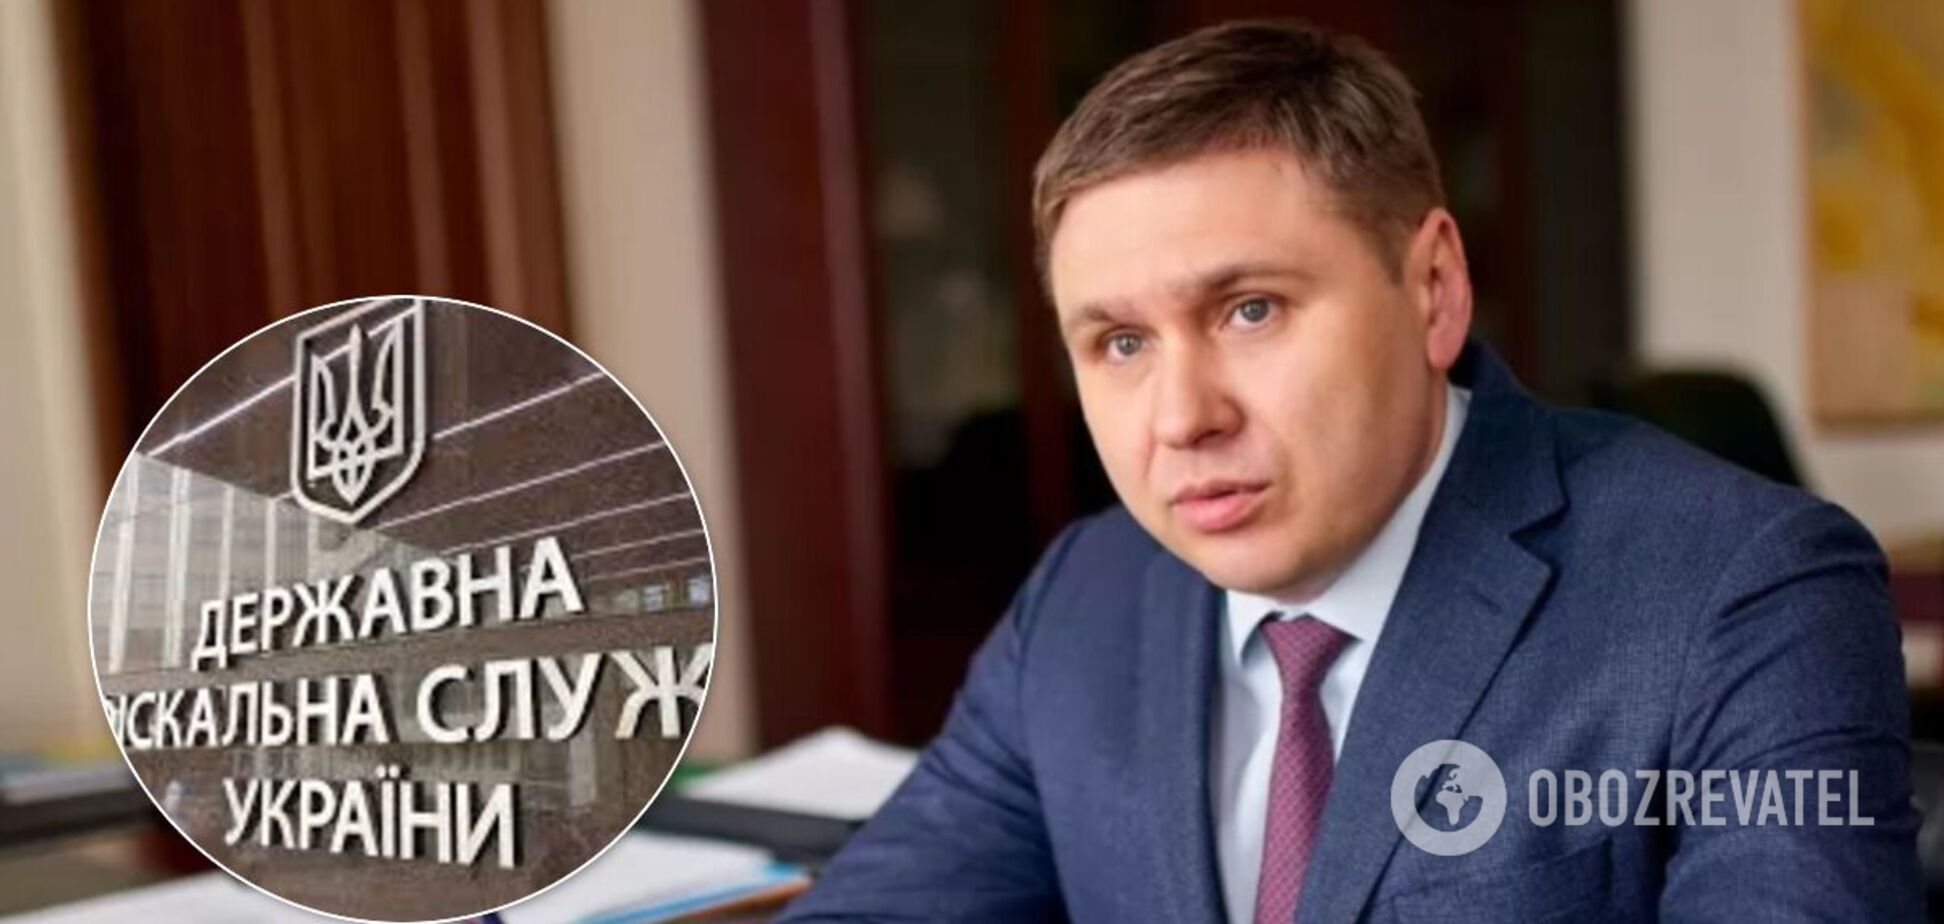 Подчиненные главы налоговой милиции Украины сняли пафосный клип к его дню рождения. Видео